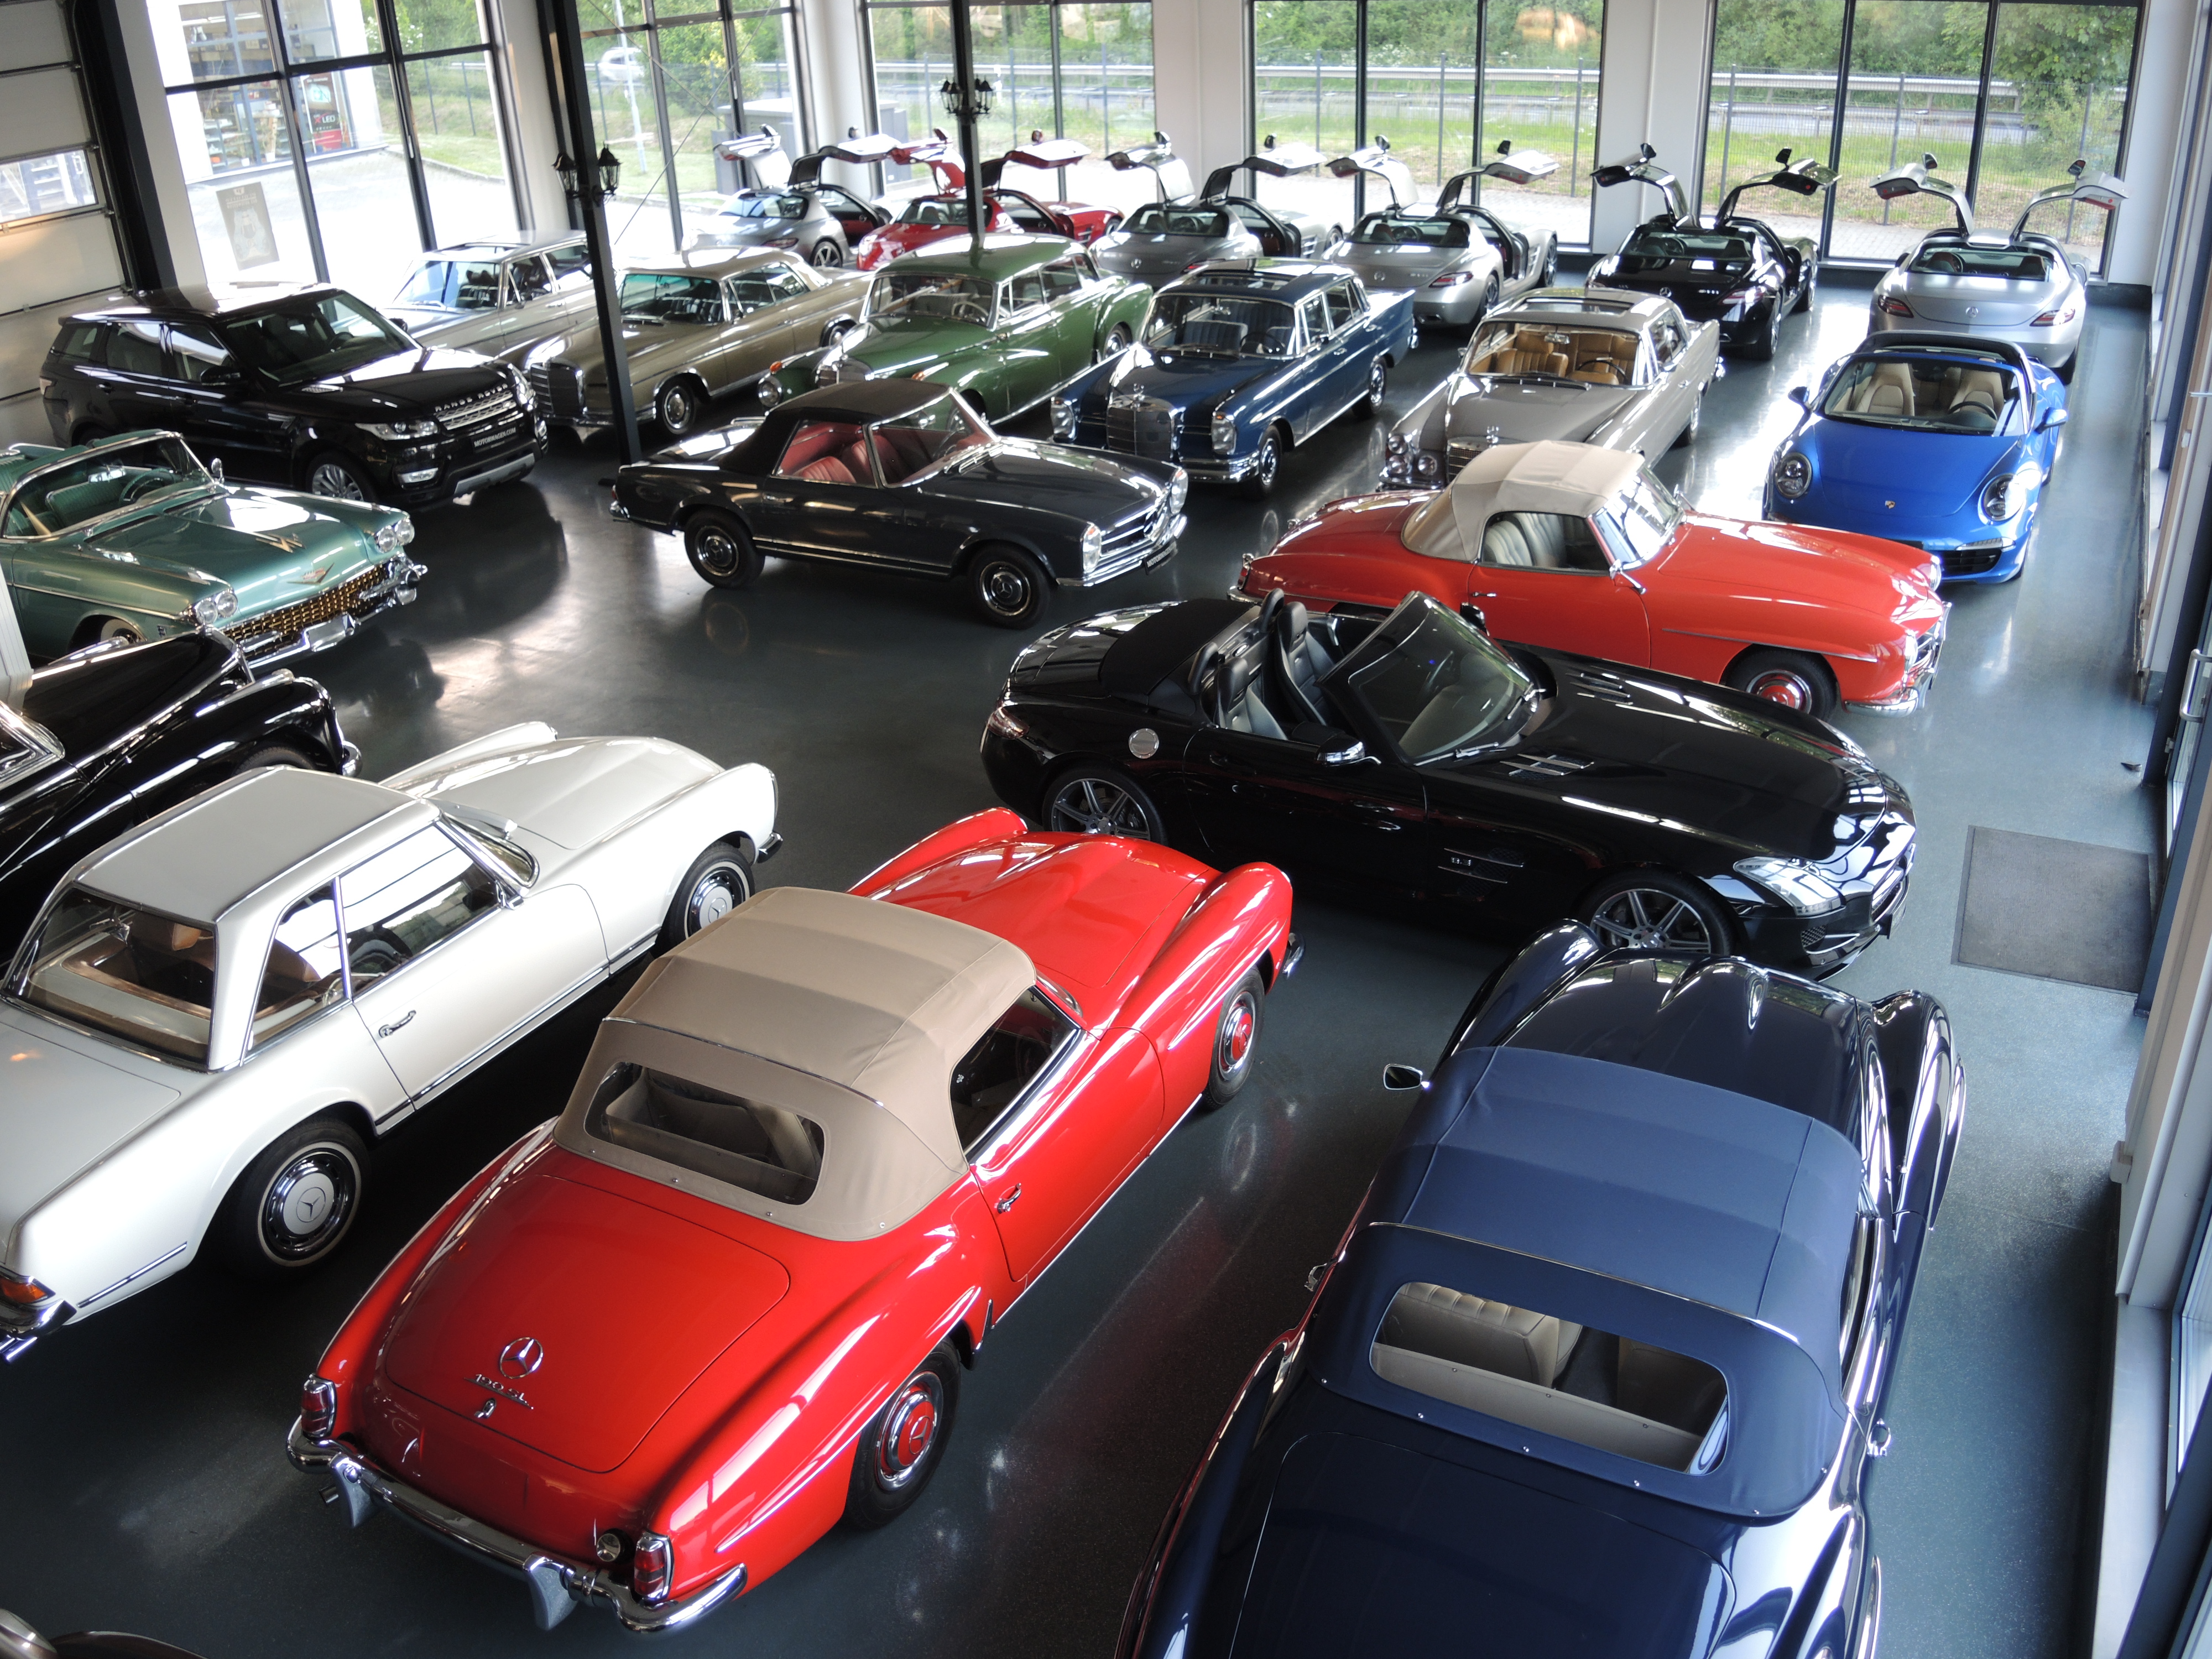 Ausstellung Classic Cars Heide
Jürgen Vogt